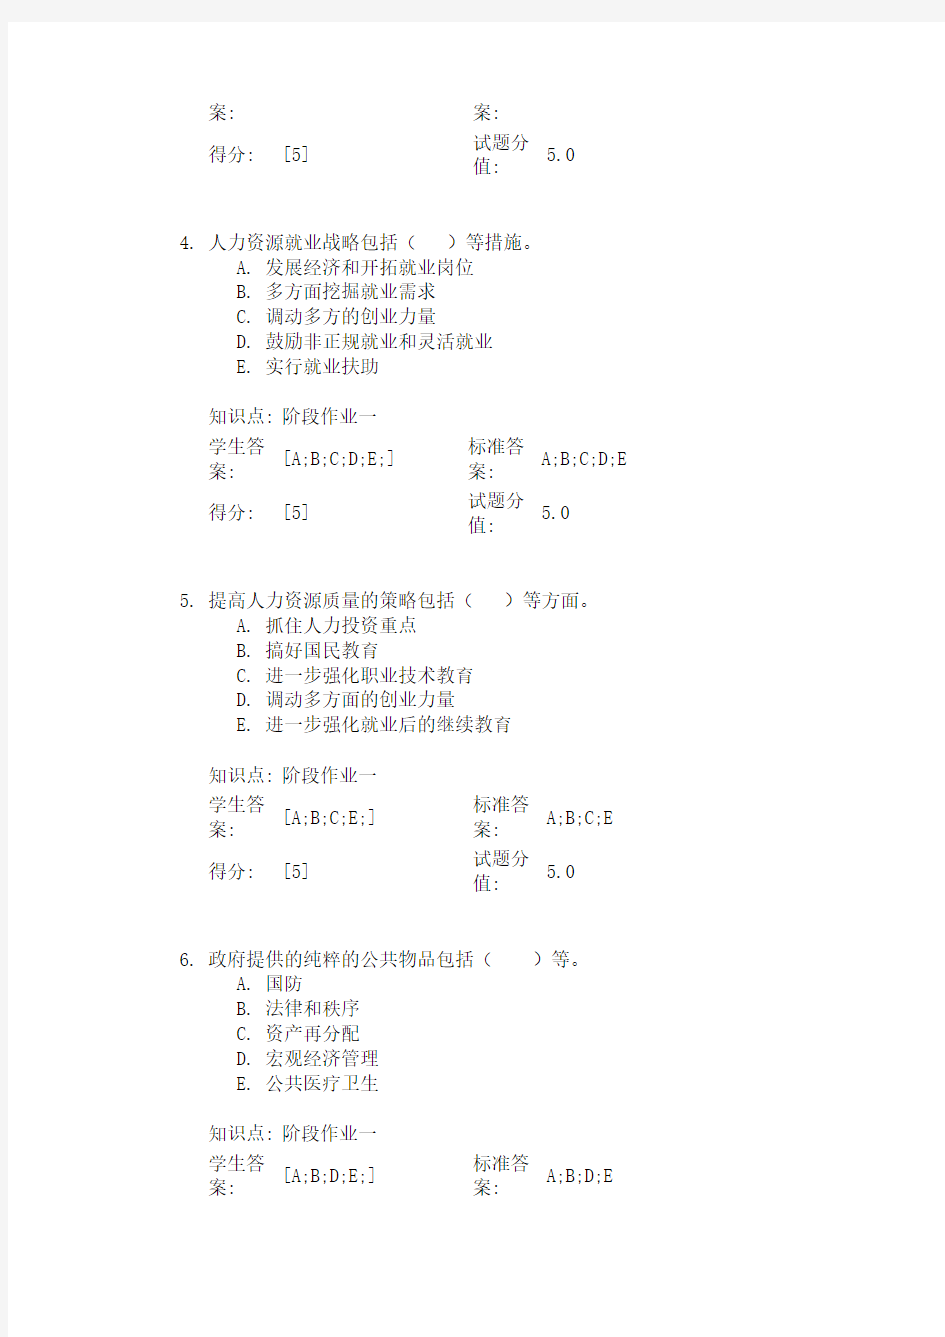 北京邮电大学 人力资源管理阶段作业一(2)